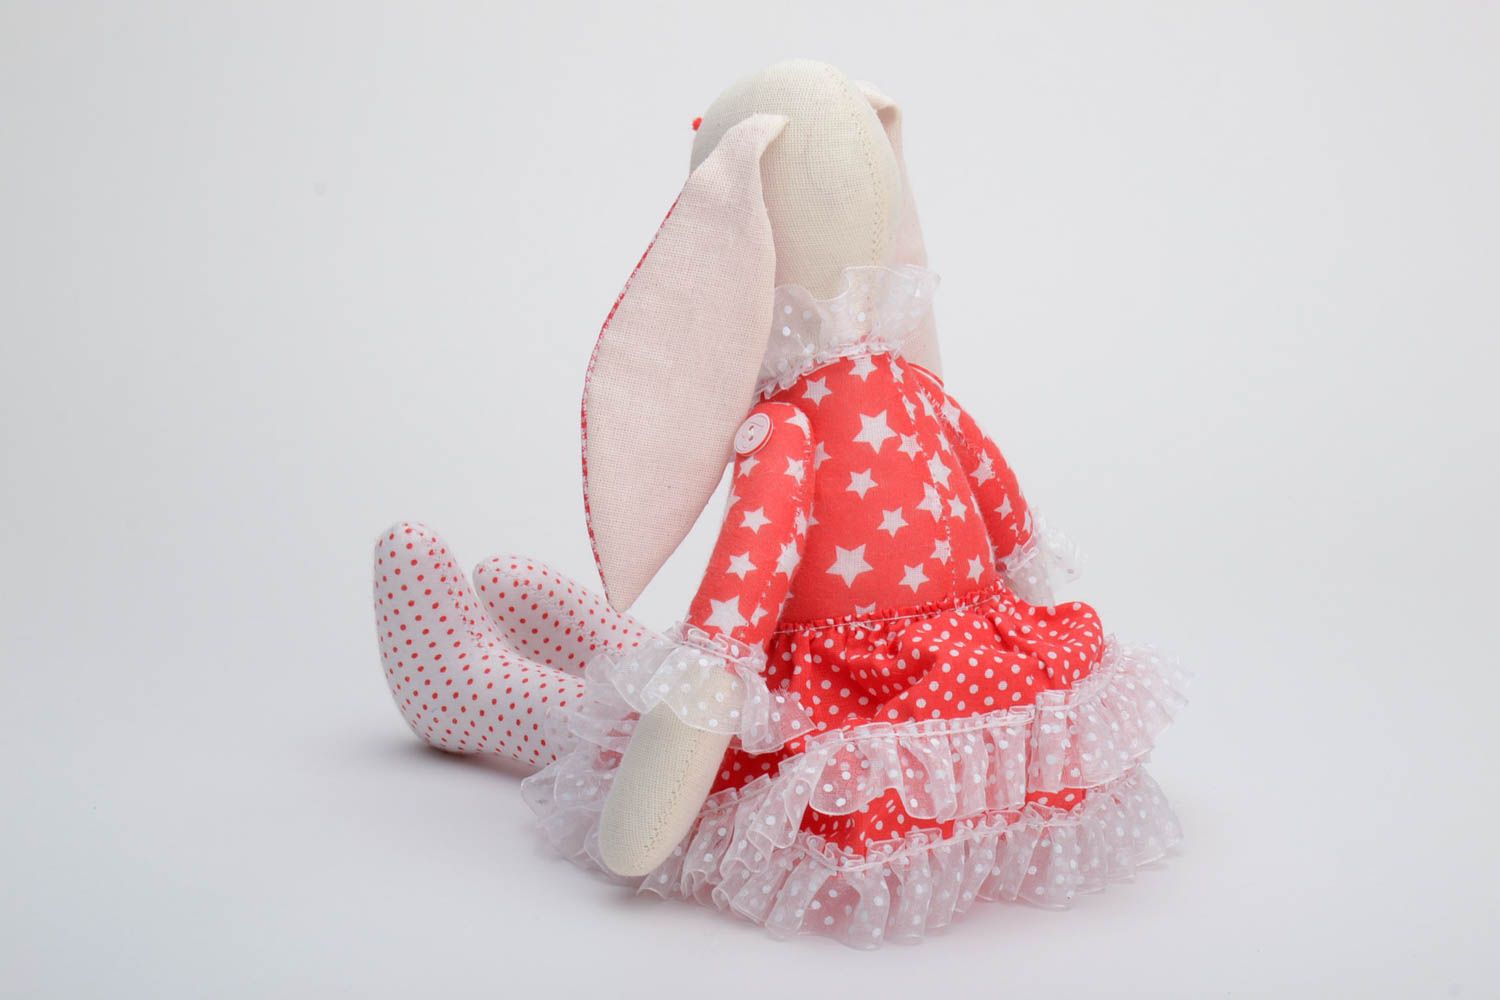 Текстильная игрушка заяц в платье из хлопка ручной работы красивая красная фото 4